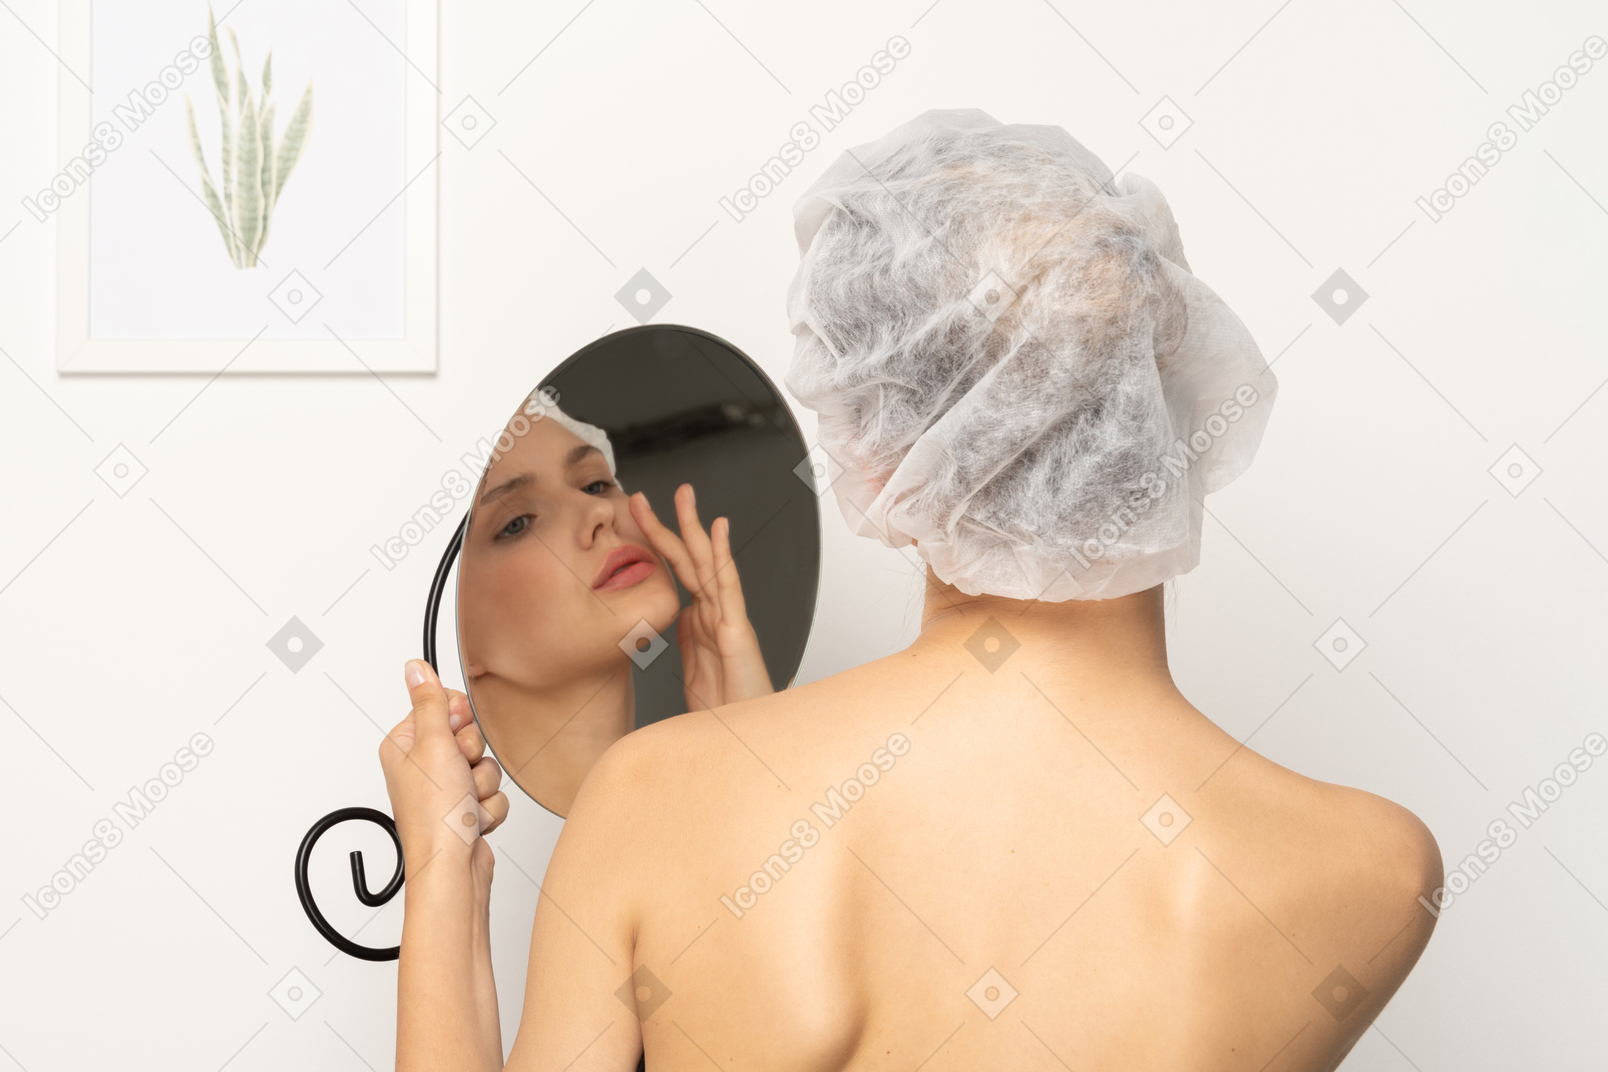 鏡に映った自分を見つめる手術帽をかぶった女性